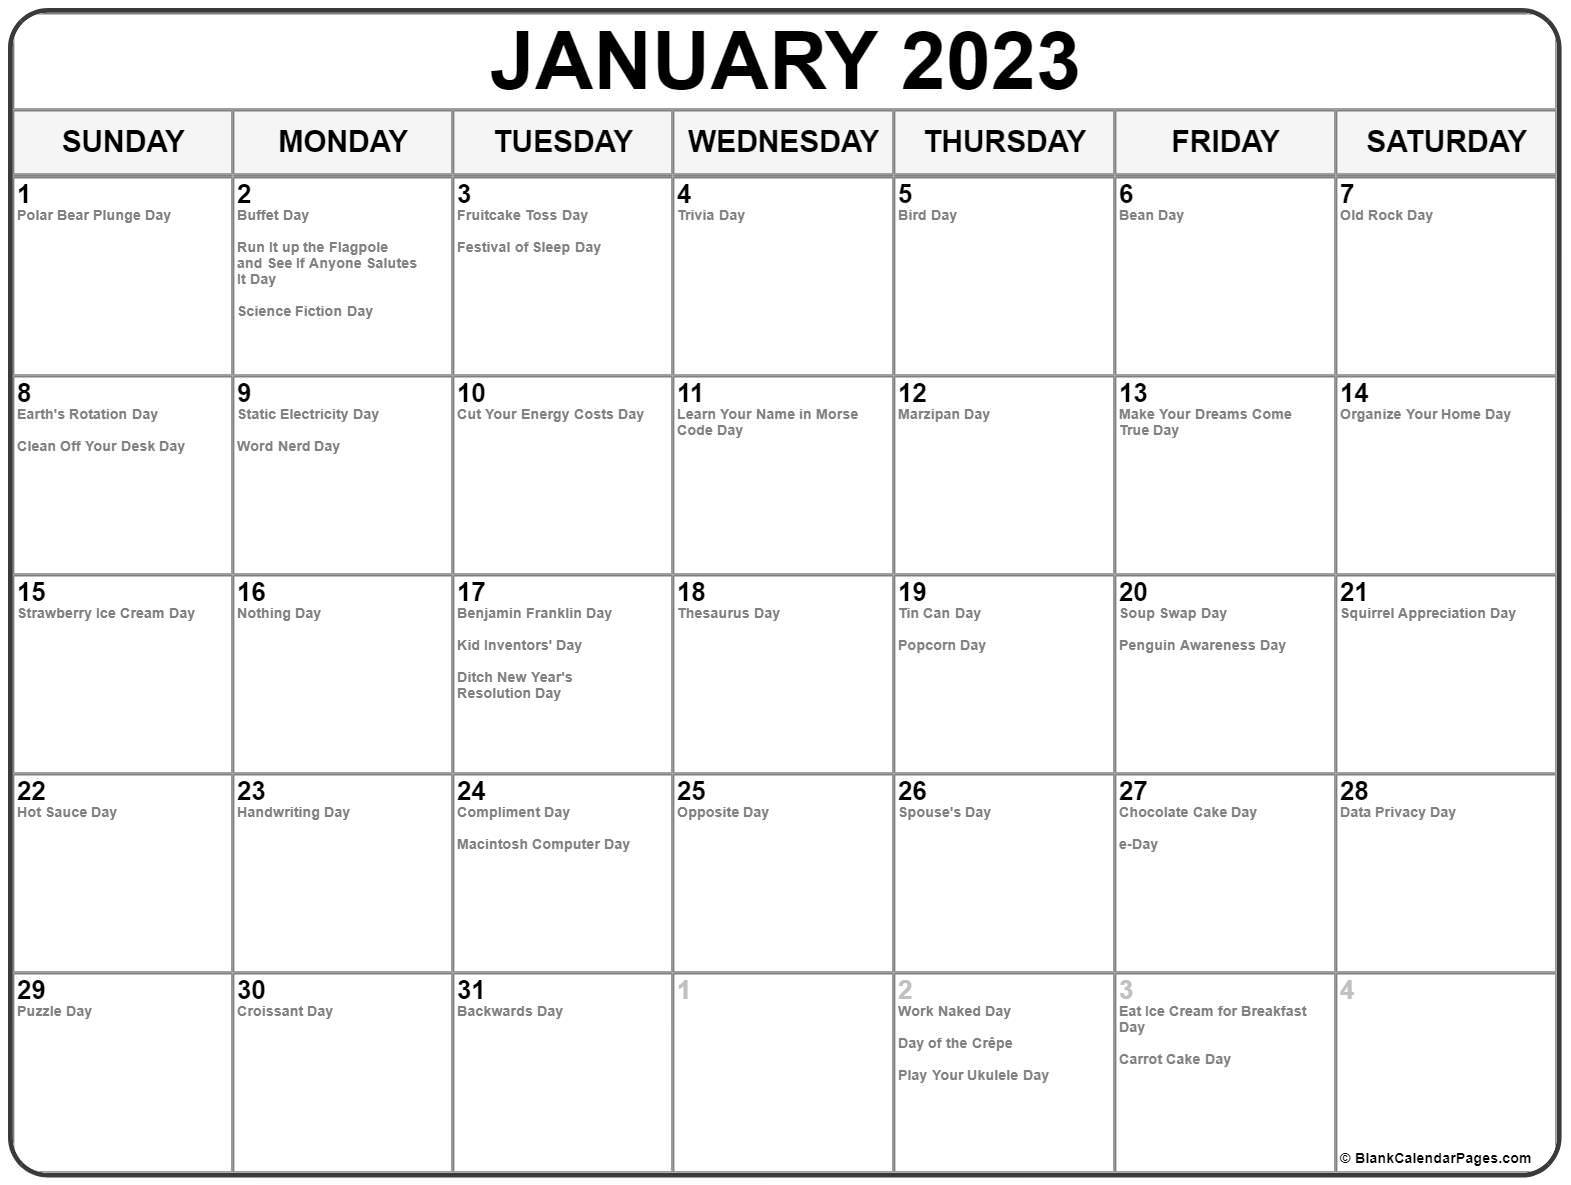 Get April 13 2022 Calendar